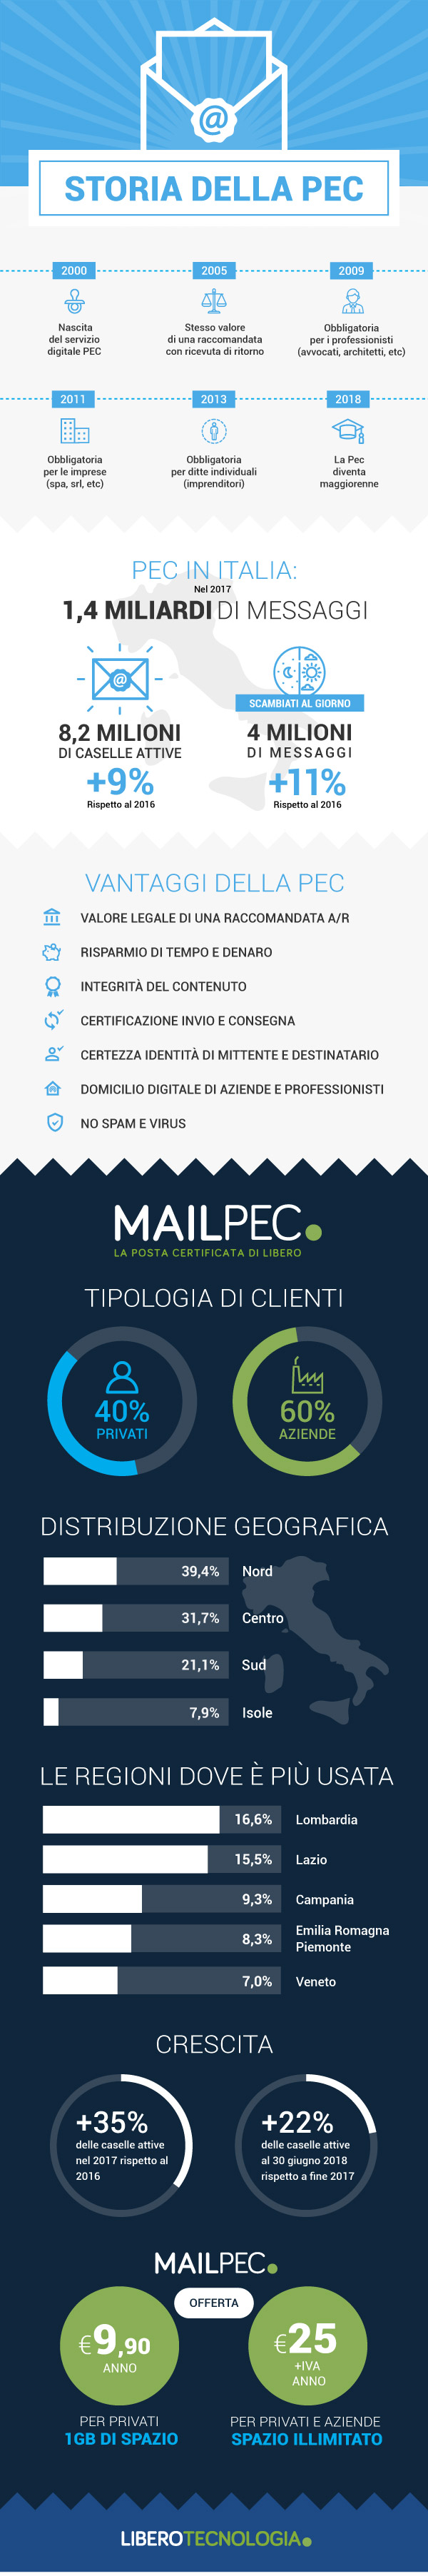 04_infografica_Mailpec